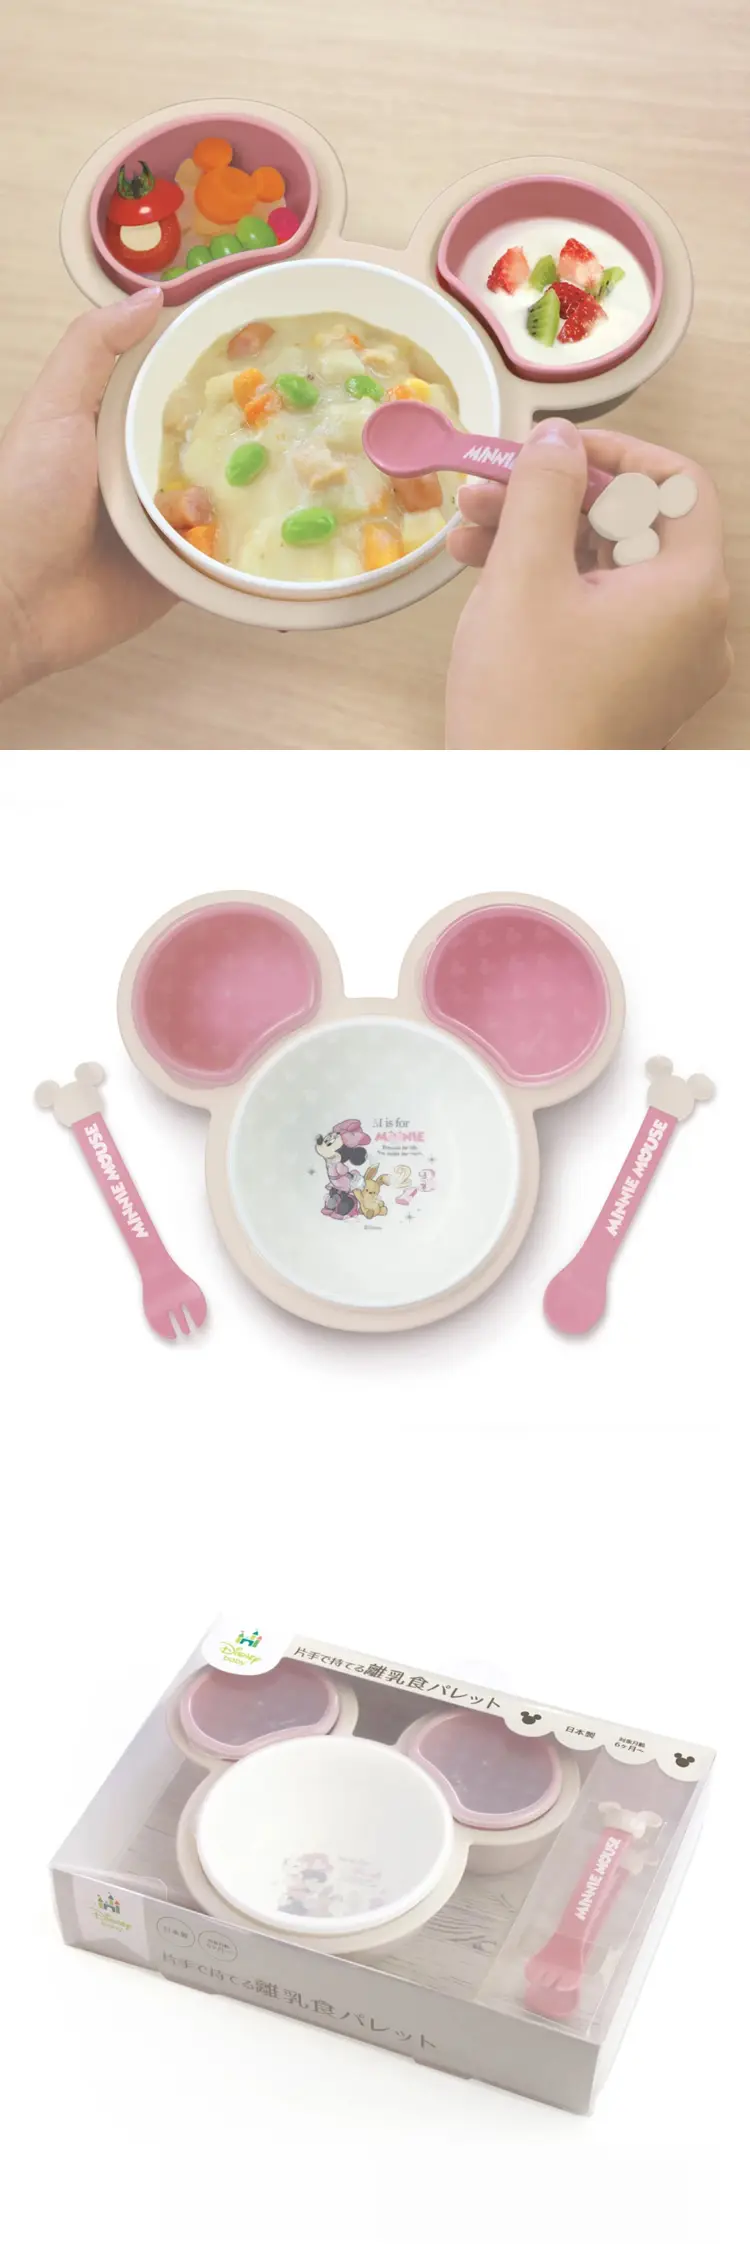 Disney 婴幼儿餐具套装 米妮款